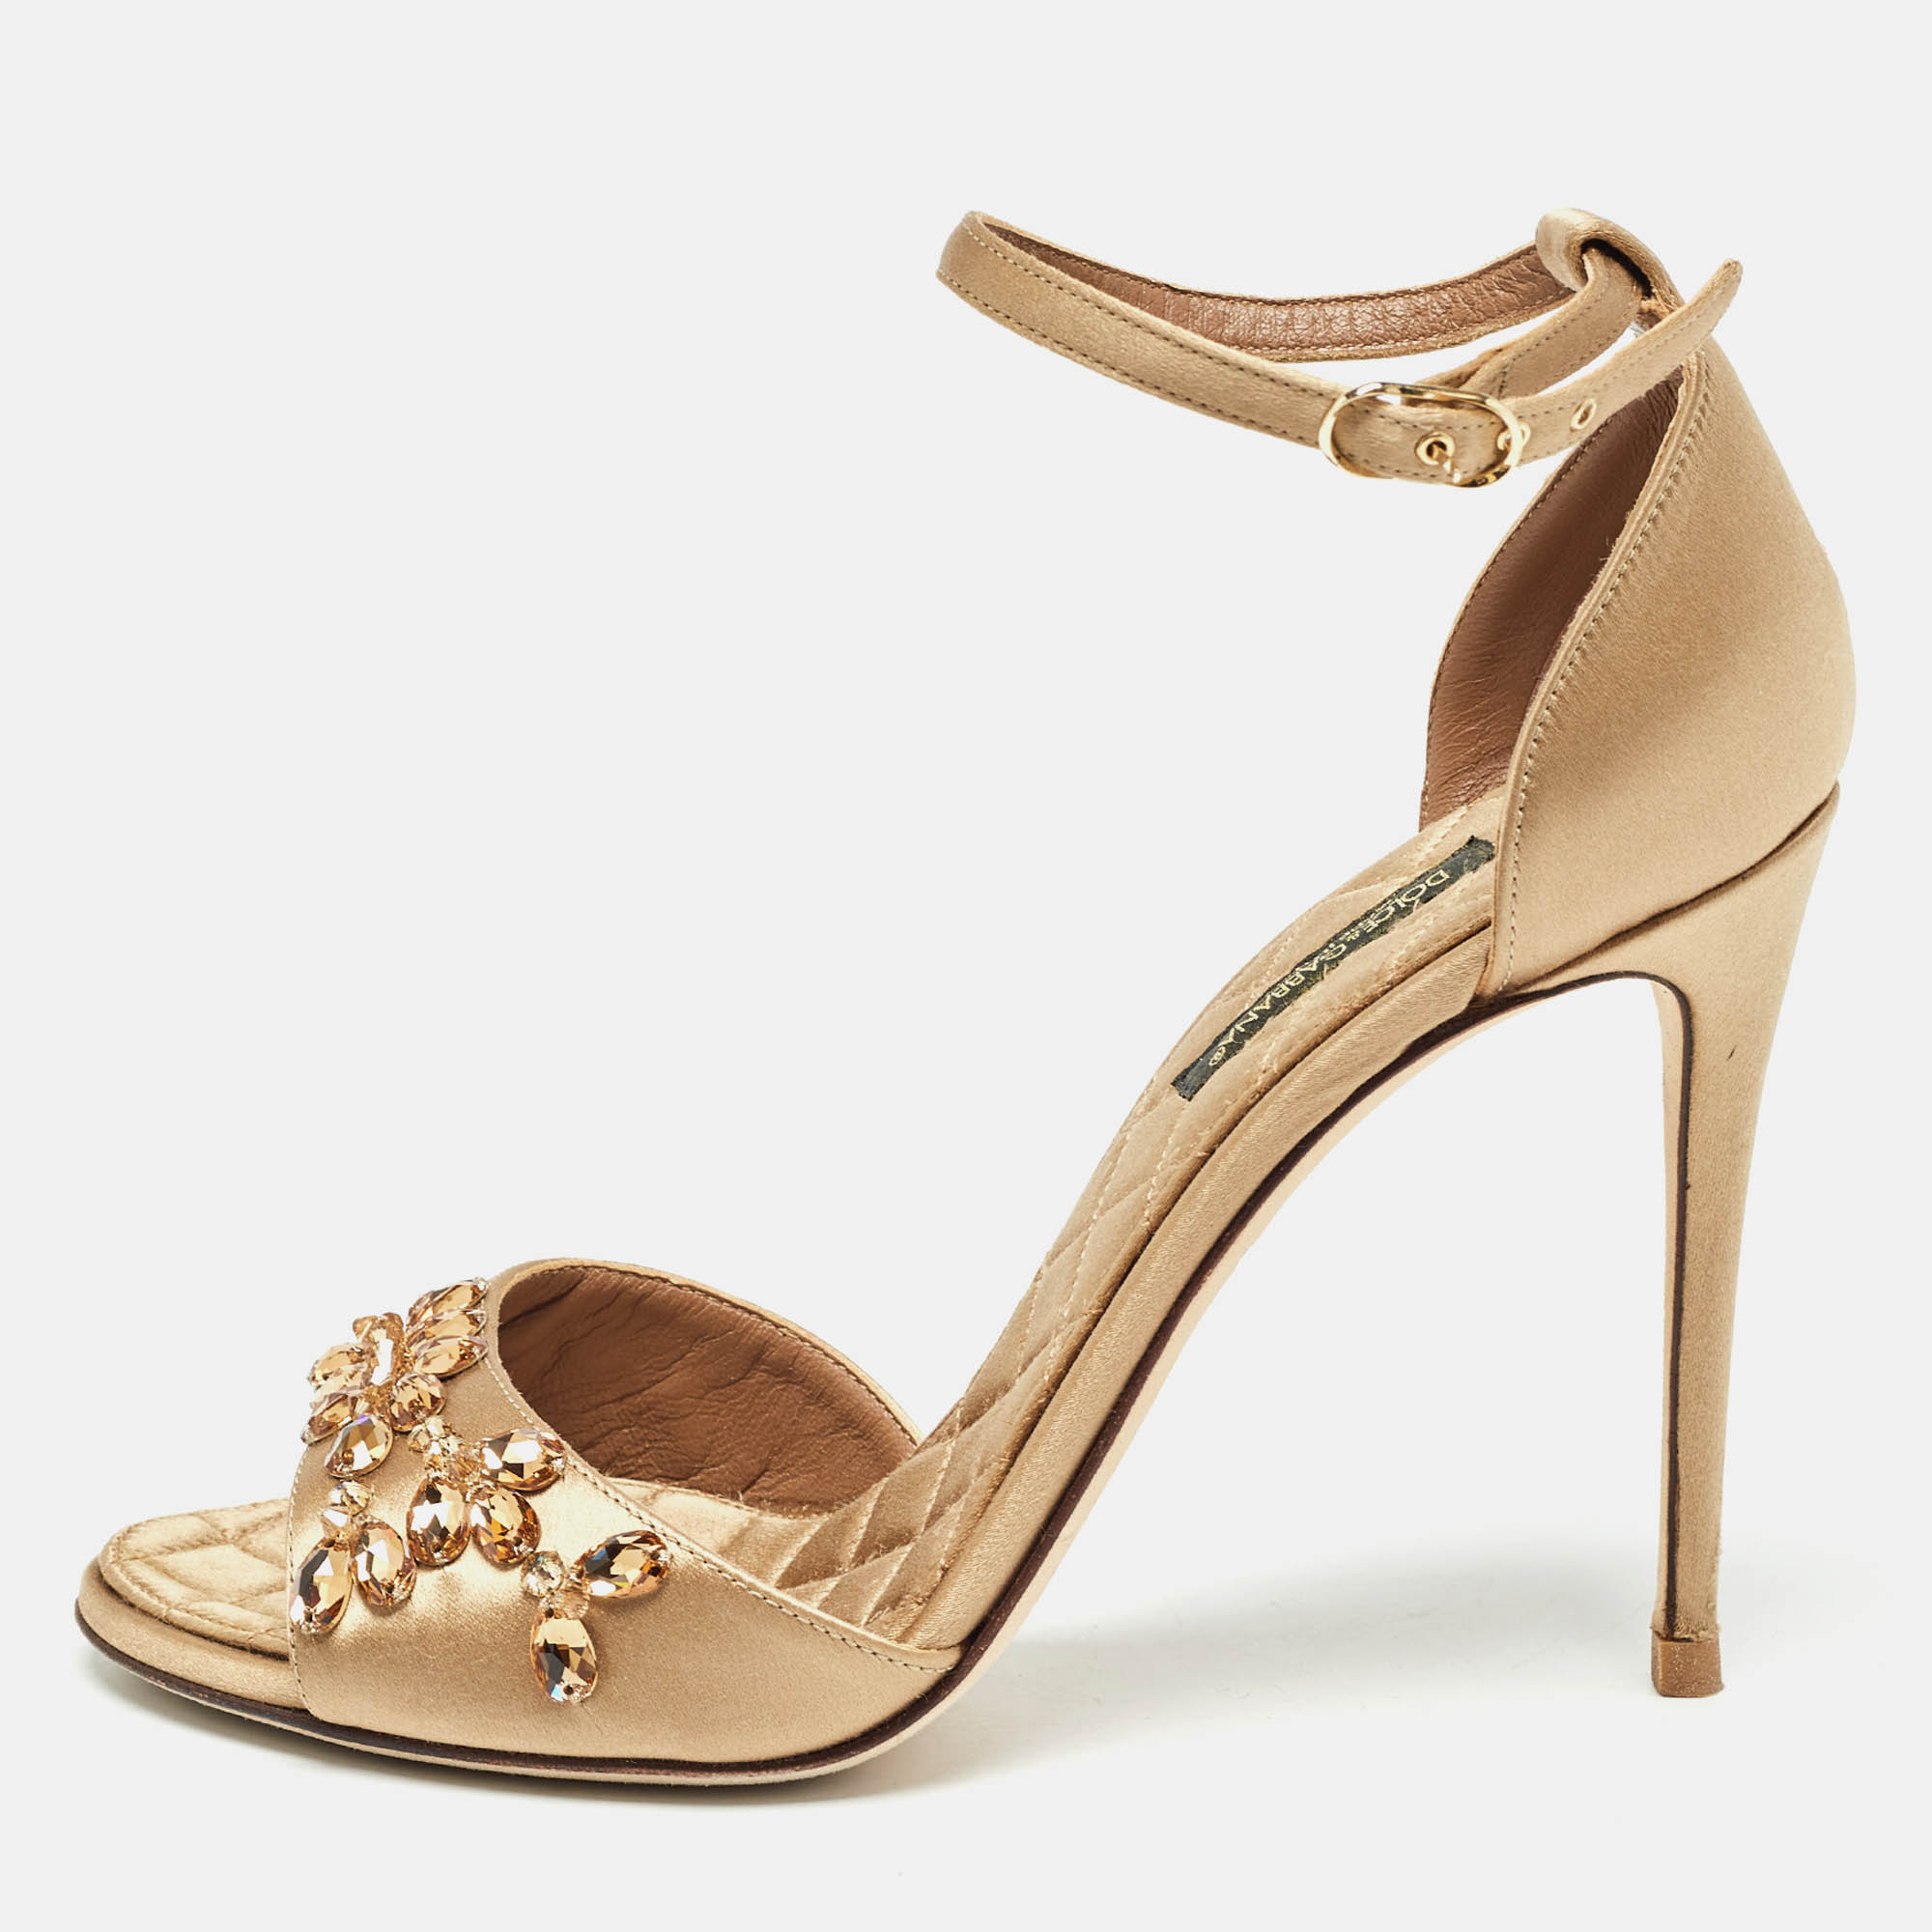 Dolce & gabbana gold satin crystal embellished ankle strap sandals size 37